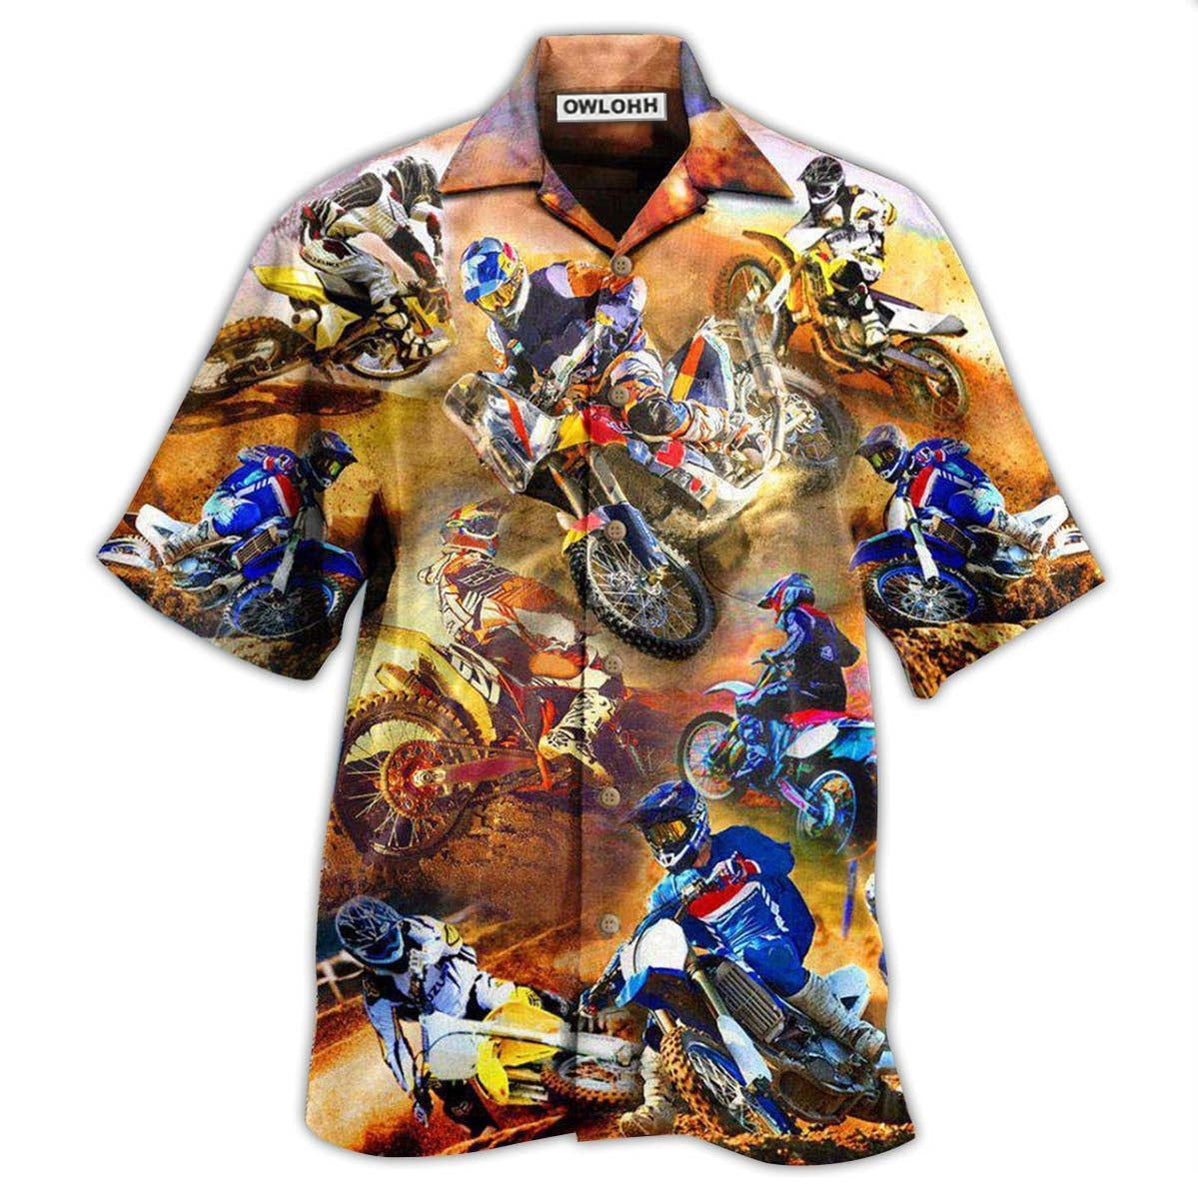 Hawaiian Shirt / Adults / S Motorcycle Shift Your Gear Racing - Hawaiian Shirt - Owls Matrix LTD